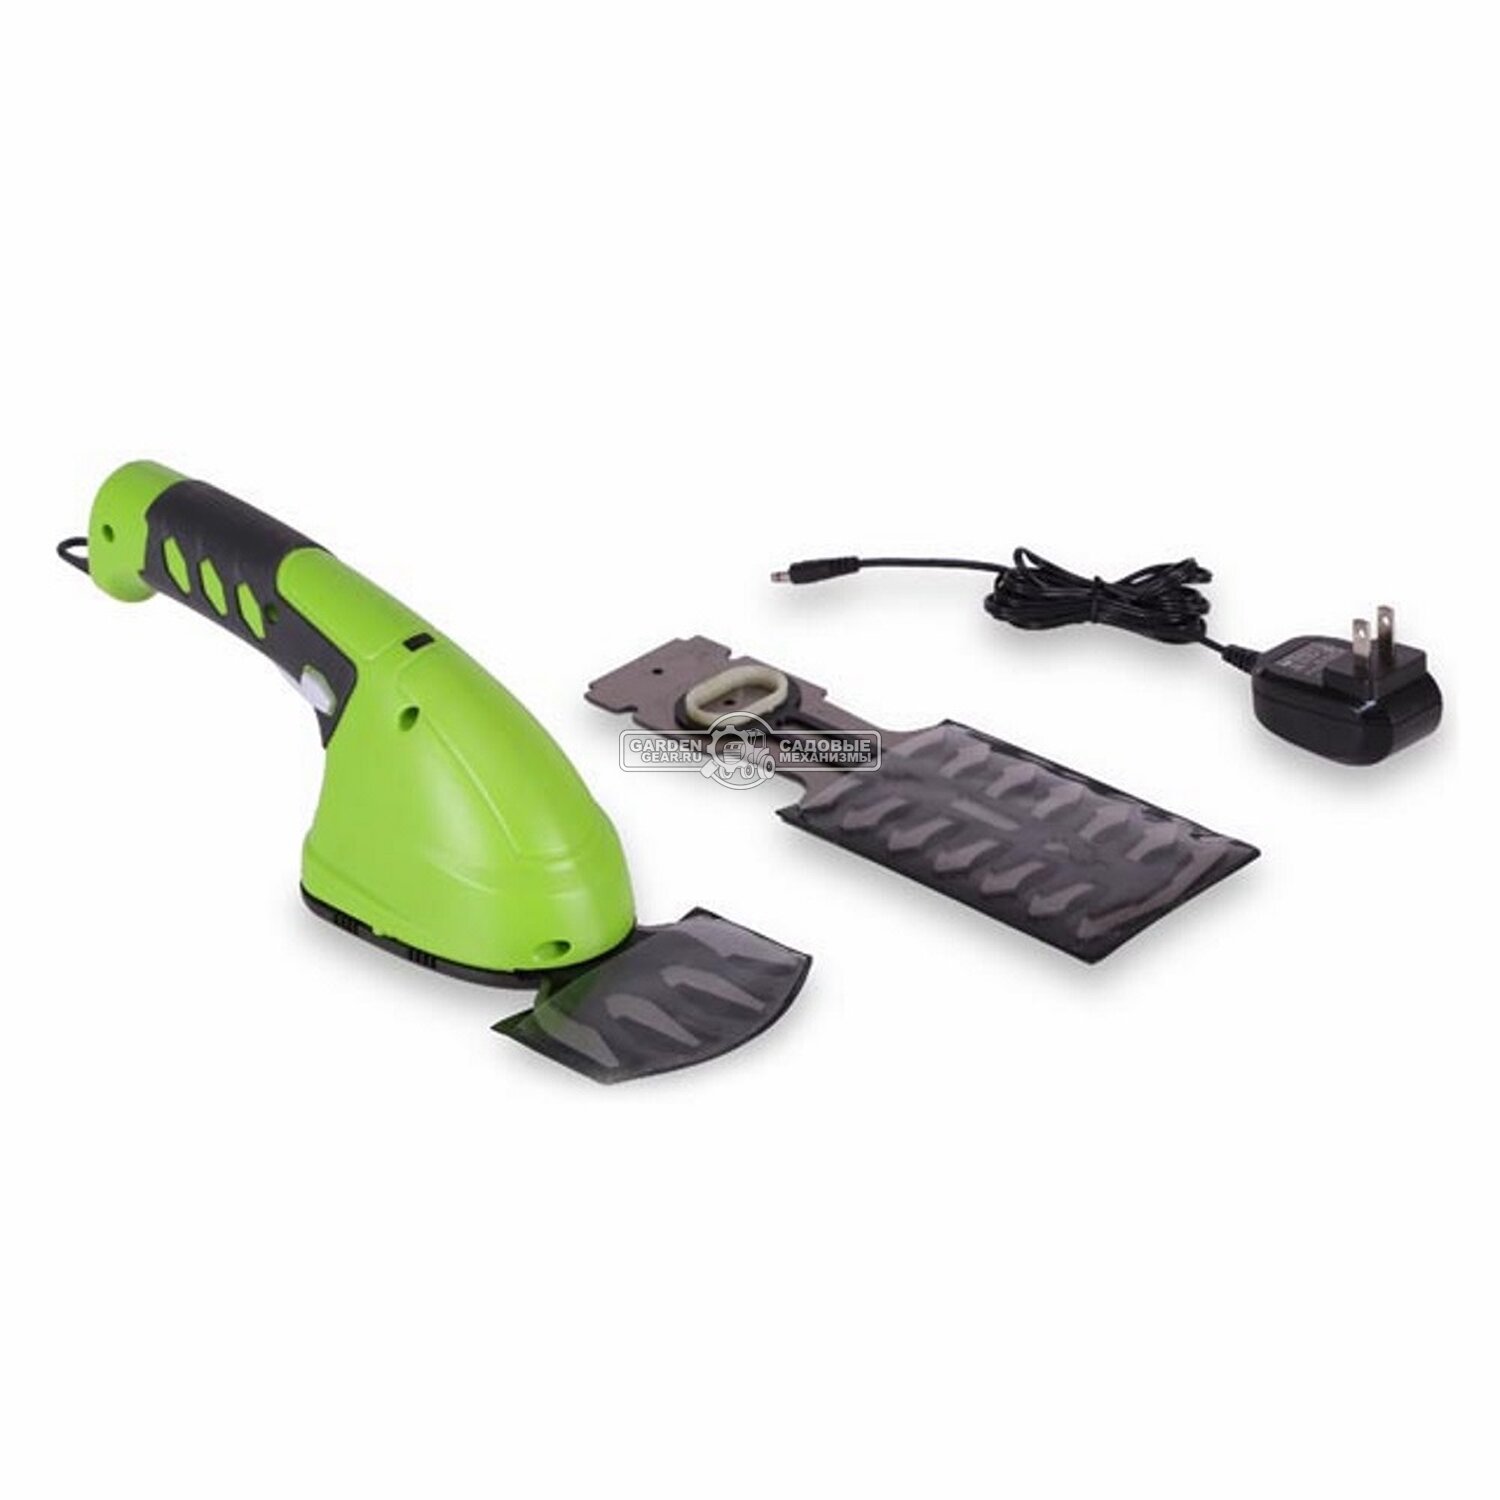 Ножницы для газонов аккумуляторные + кусторез GreenWorks G7,2GS с телескопической рукояткой (PRC, 7.2 В, 2 Ач, 8 см + 16 см, 0.7 кг)